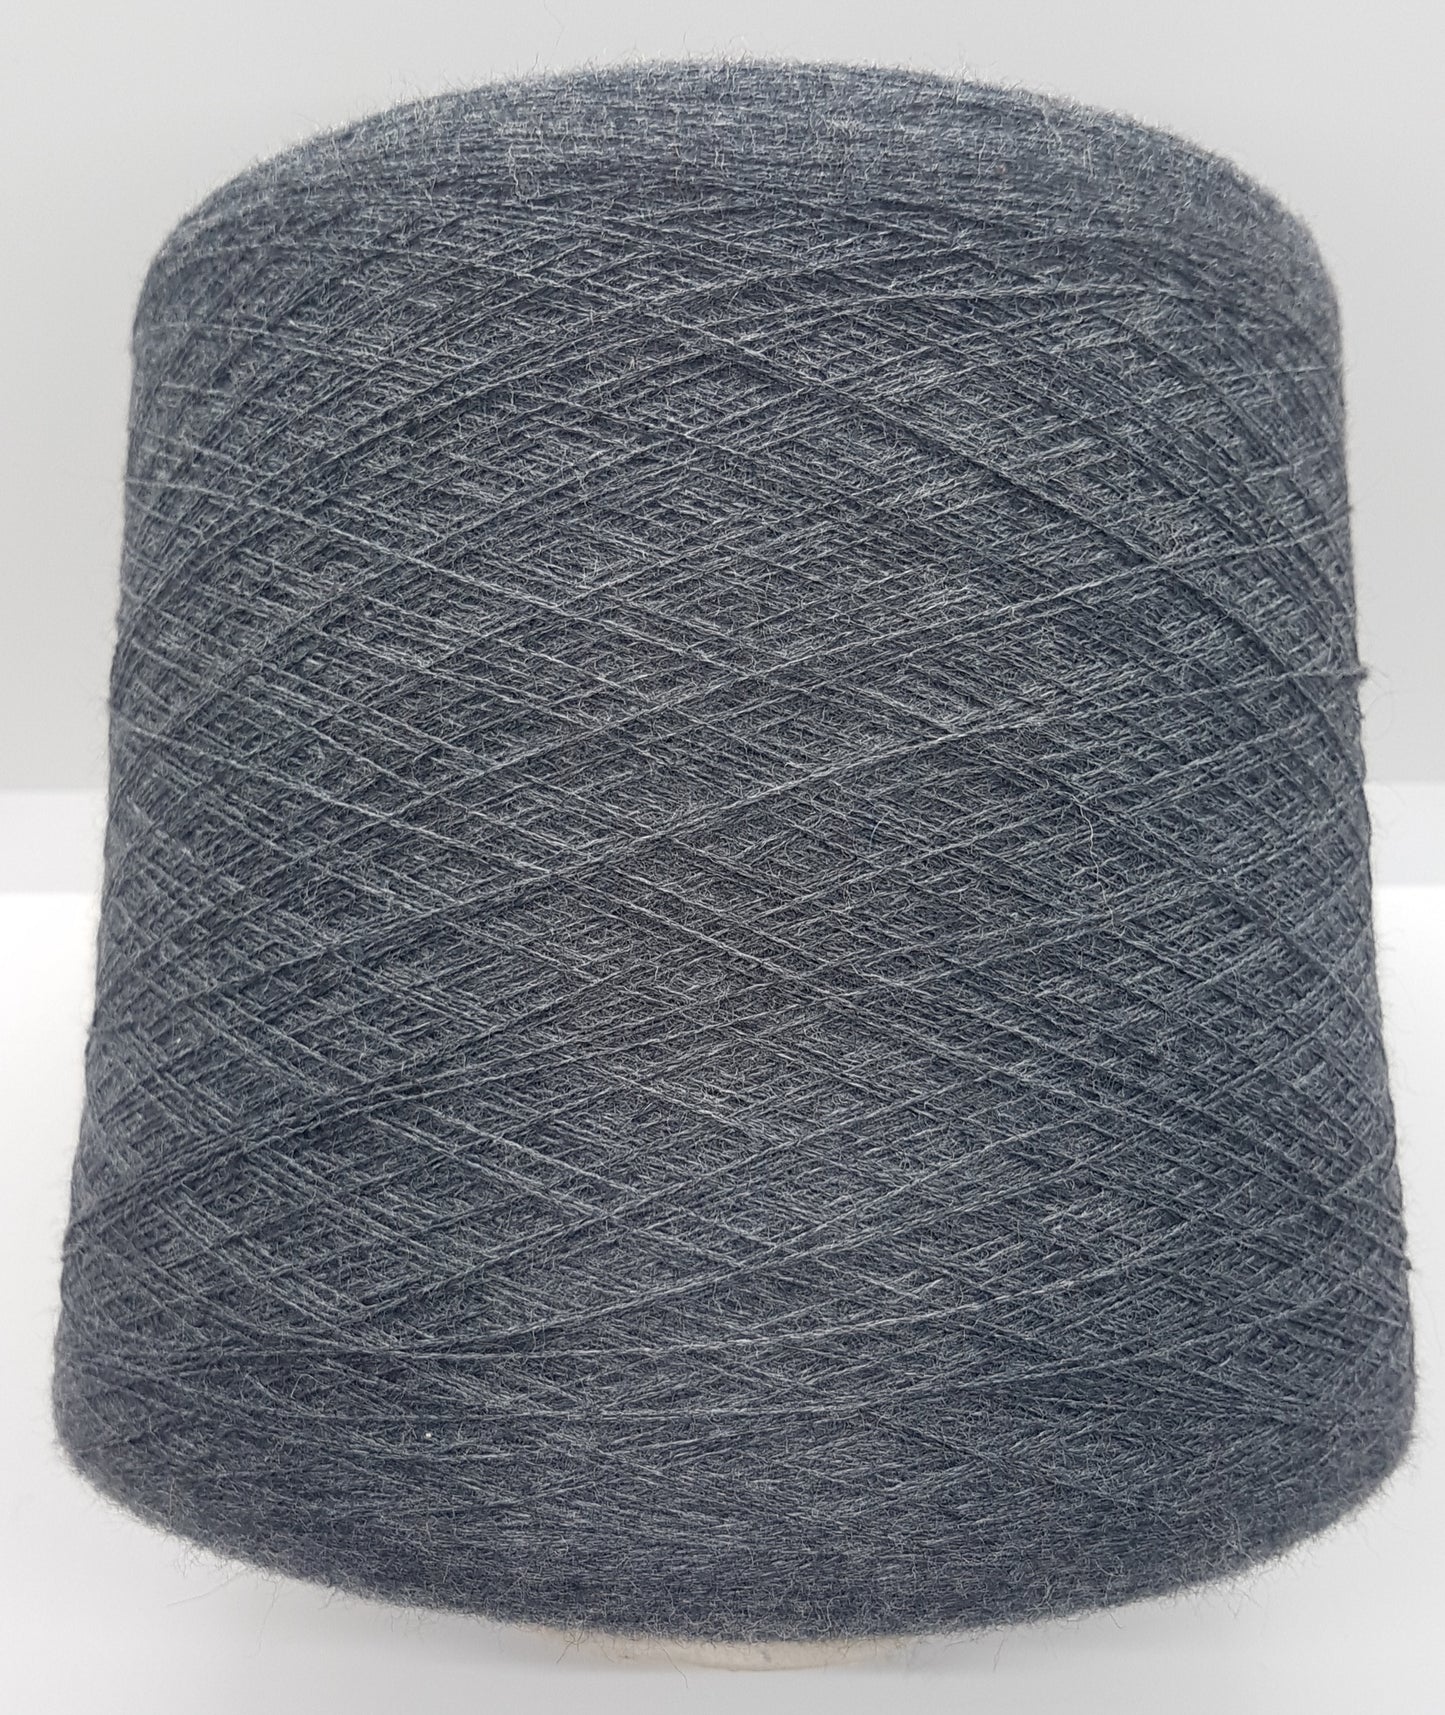 100g Merino Wolle Italienische Garn graue Farbe N.297